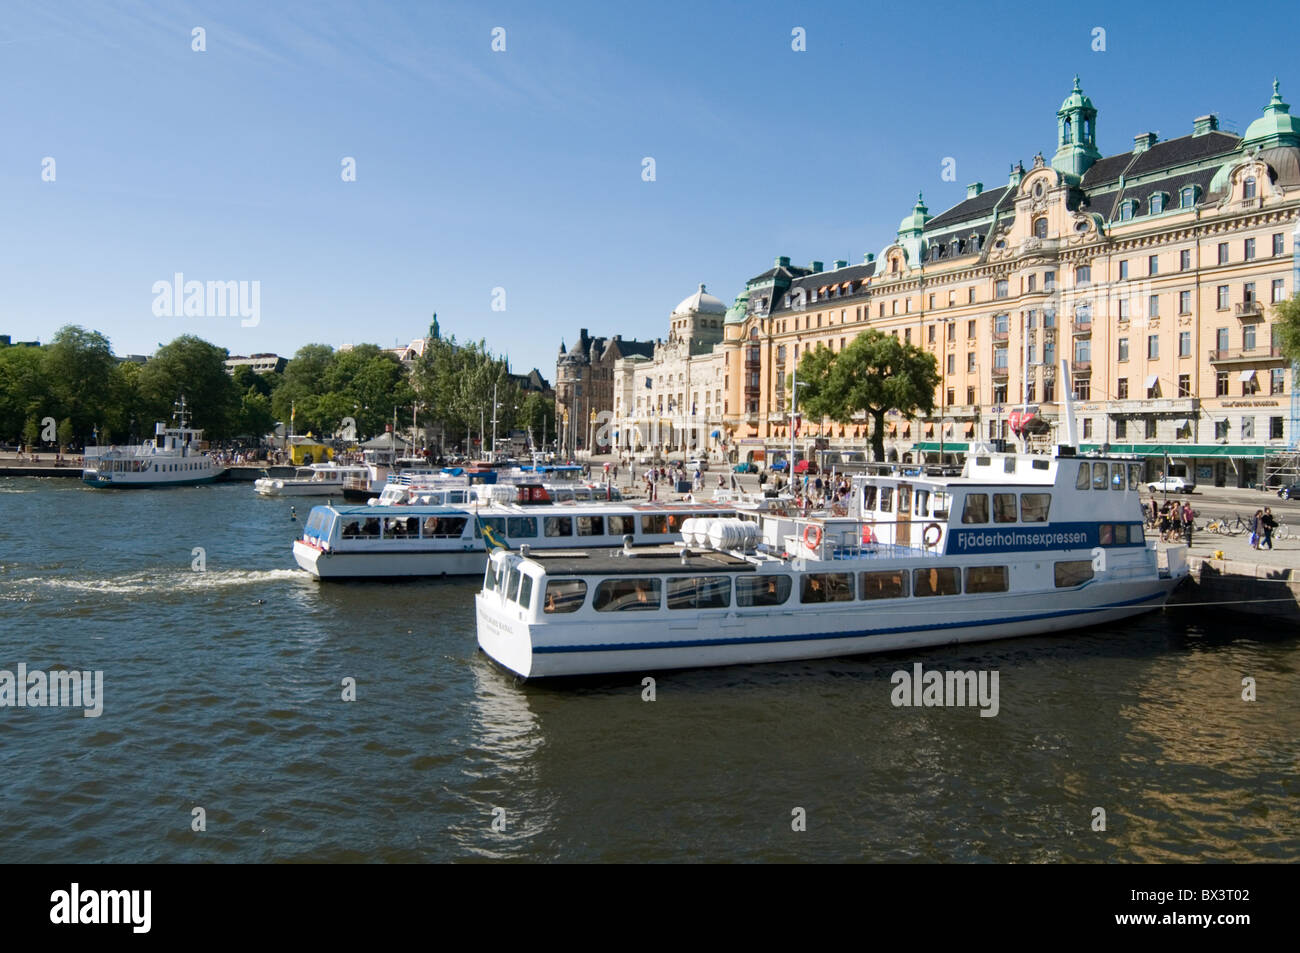 Voir de vue stockholm bateau bateaux touristiques touristique d'une île à l'autre journée de visite de la journée voyage tourisme daytrippers suè Banque D'Images